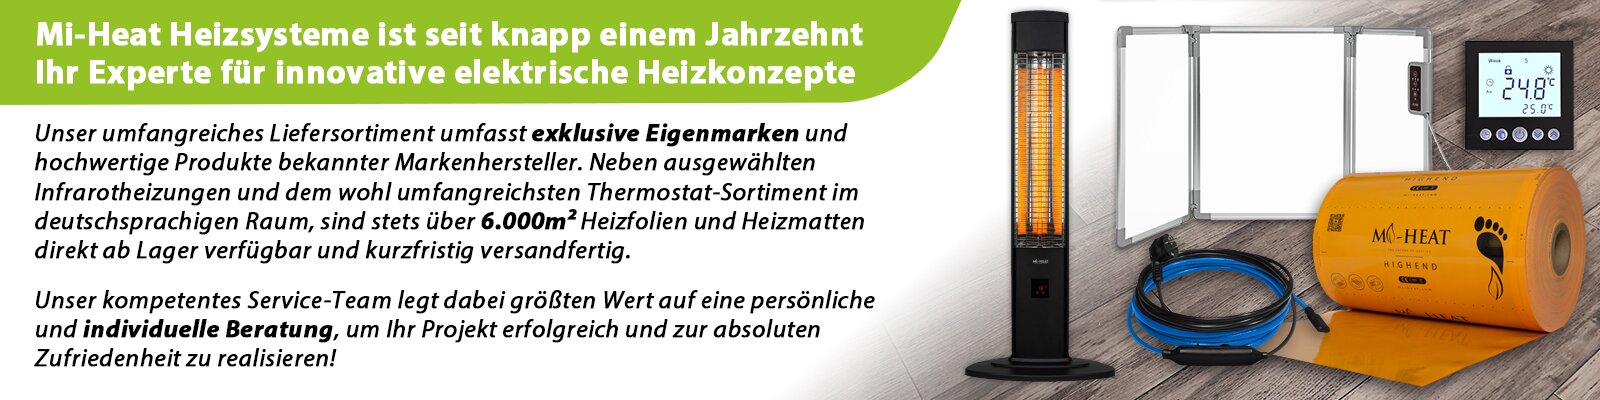 Mi-Heat Heizsysteme - Ihr Experte für elektrisches Heizen - Fußbodenheizung, Infrarotheizung, uvm.